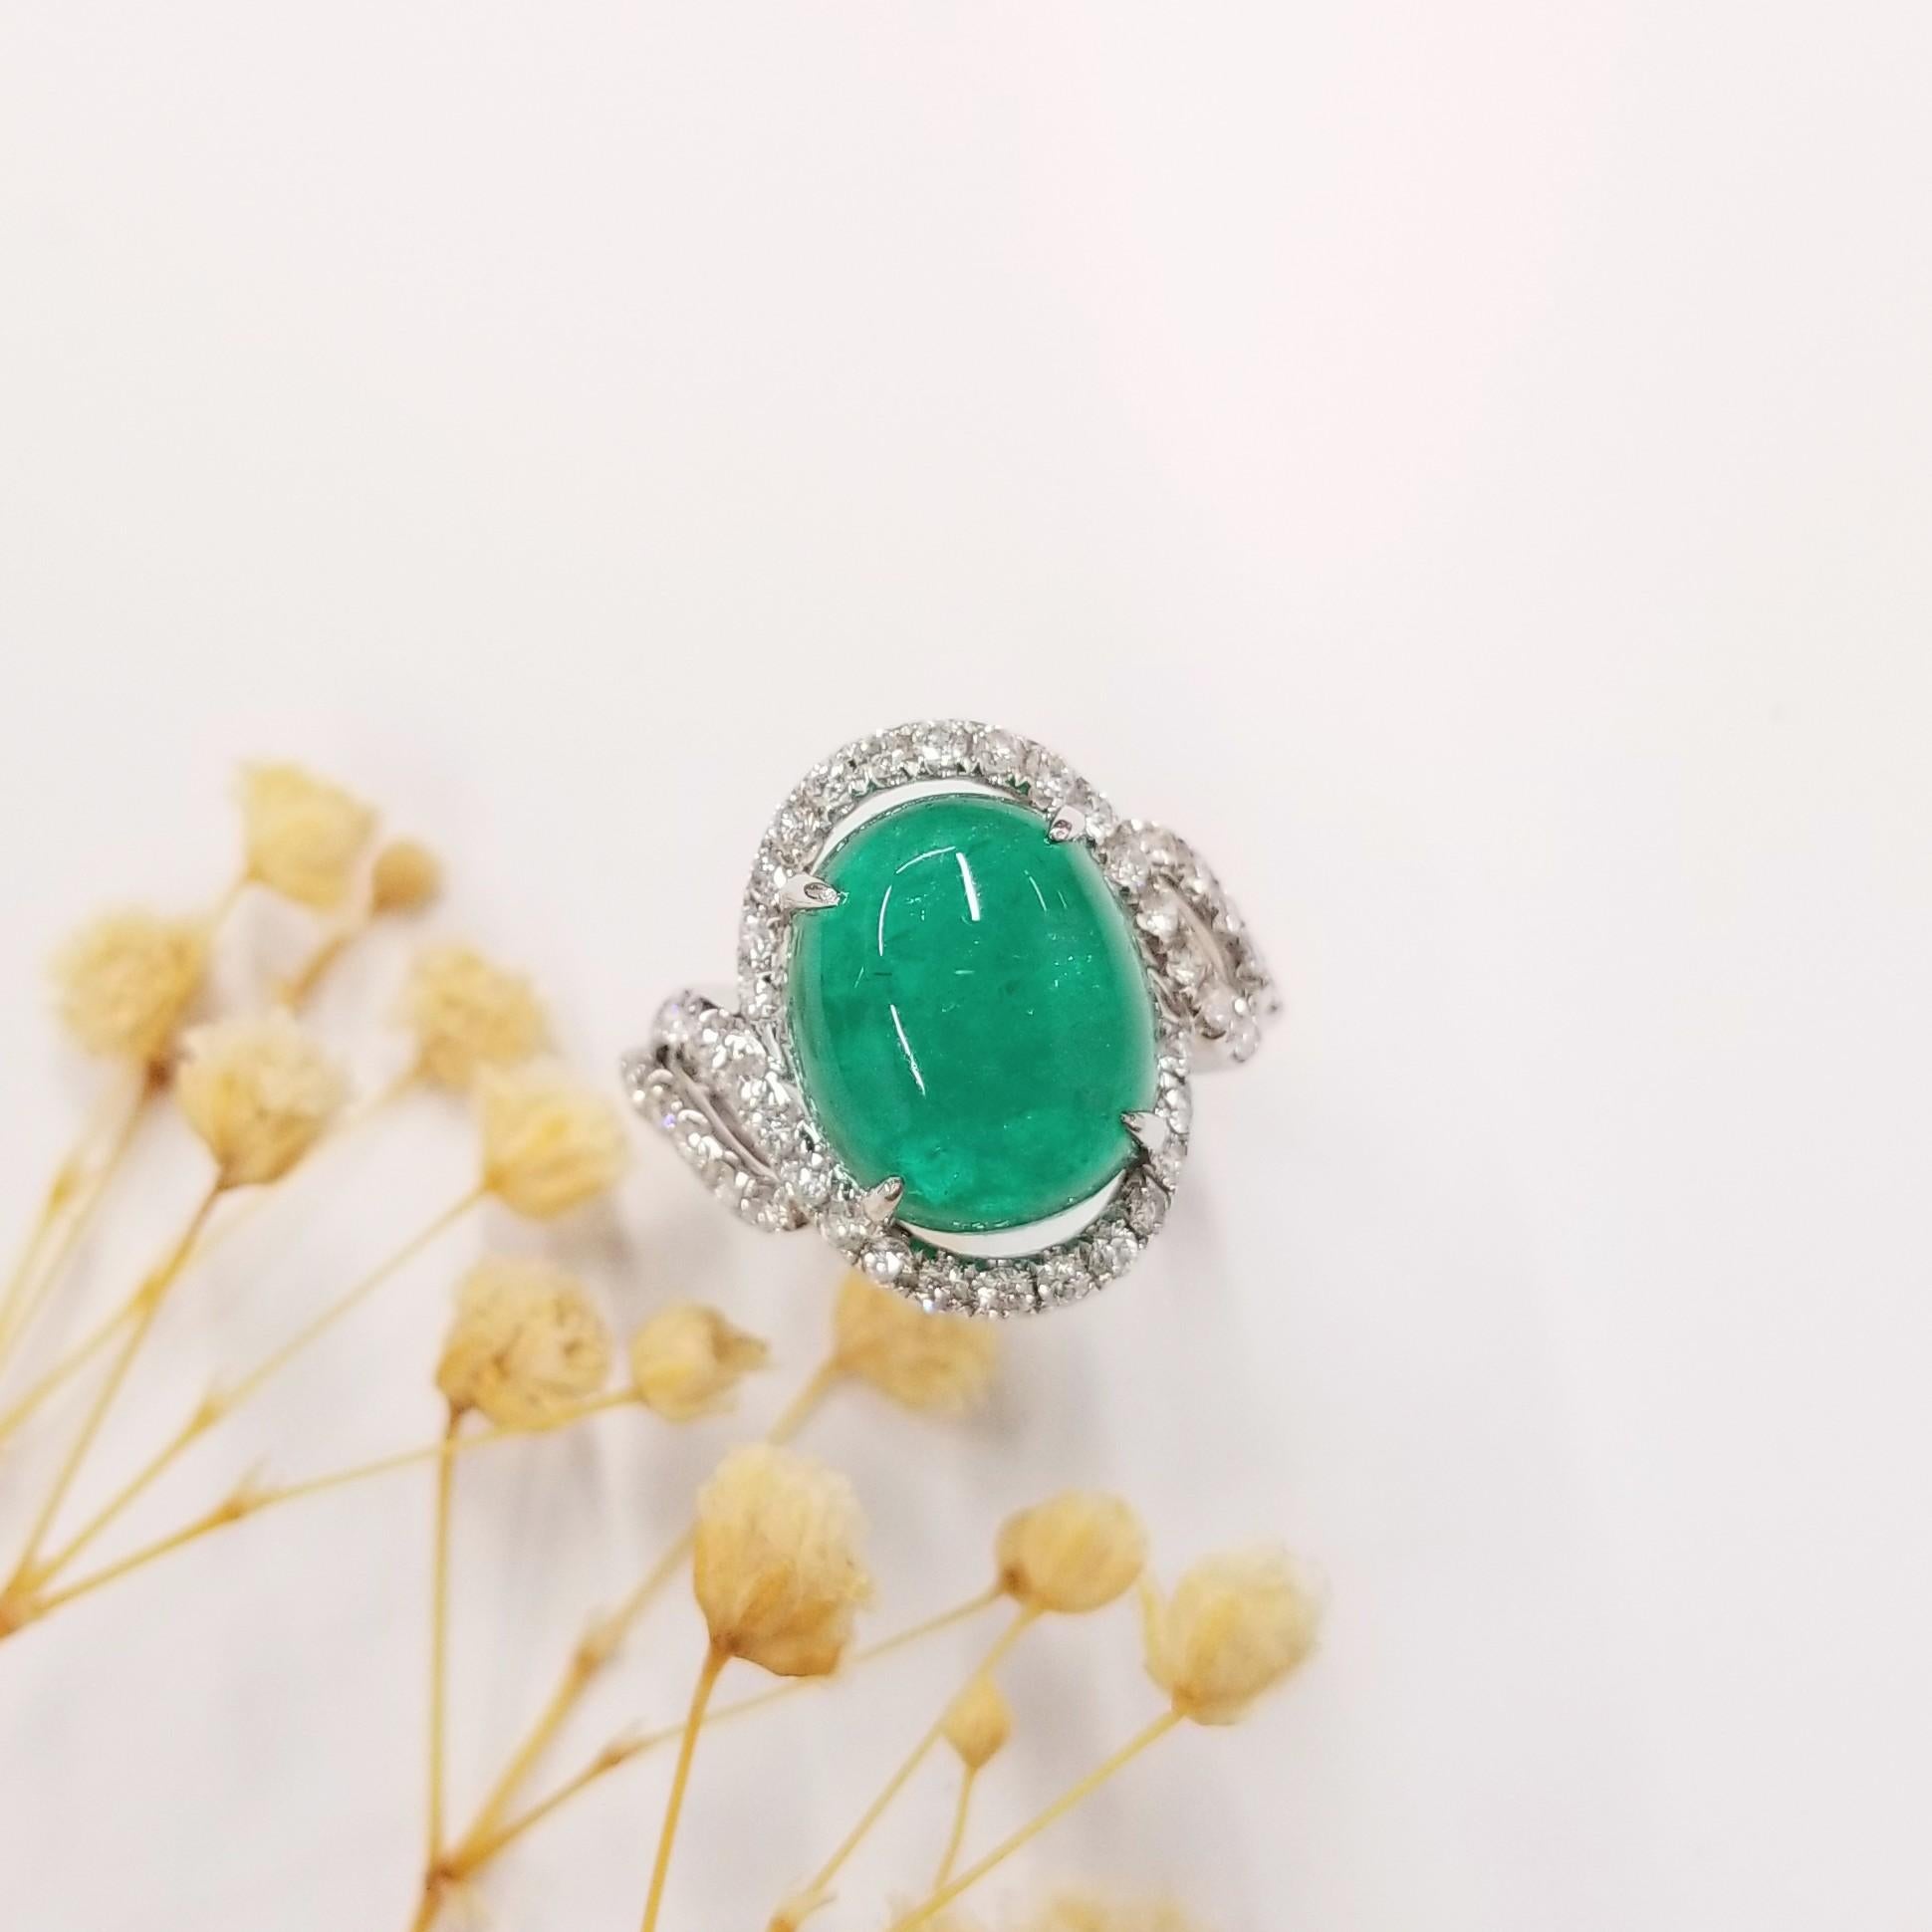 Ein außergewöhnliches Kunstwerk in Form eines IGI-zertifizierten natürlichen Smaragds von 6,71 Karat in intensivem Blaugrün (aus Kolumbien) und eines ovalen Cabochons mit natürlichen Diamanten in einem Ring im modernen Stil. Dieser sorgfältig aus